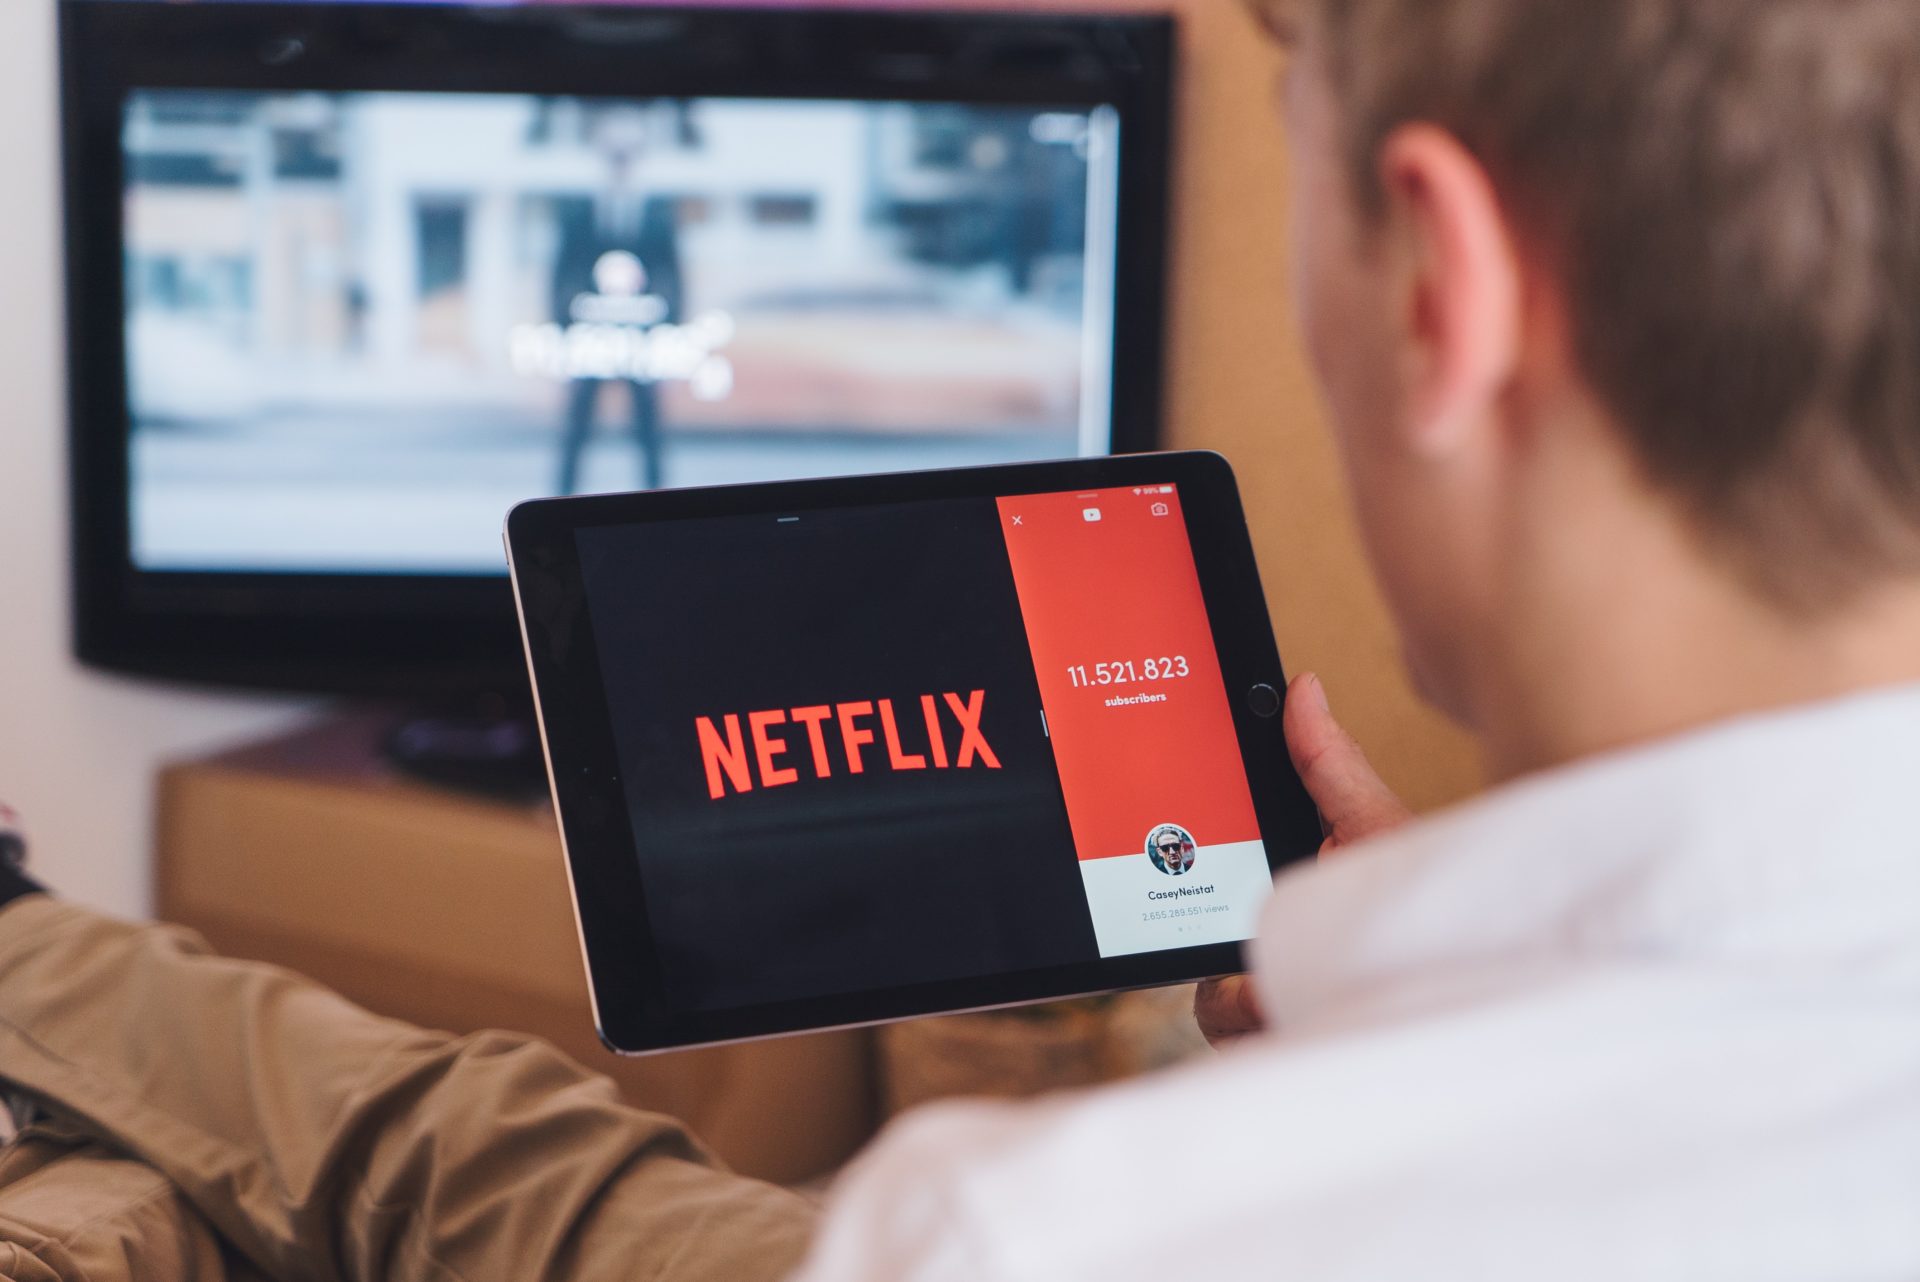 Cómo mover su perfil de Netflix a una cuenta nueva o existente